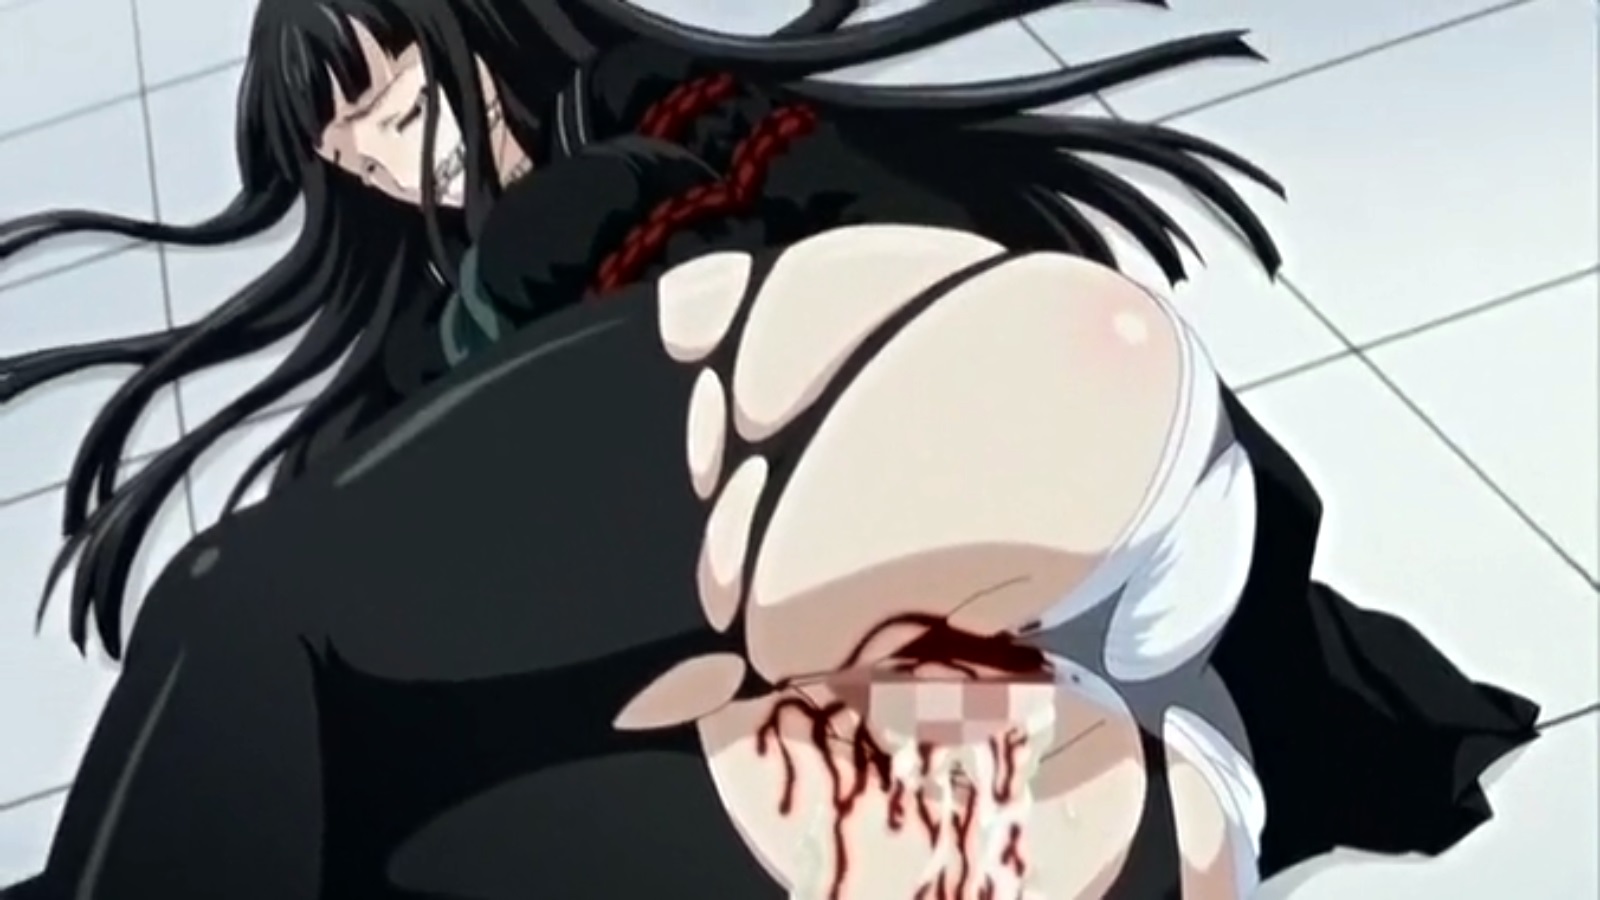 Brutal Hentai Movie Rape, Blood, Ache, Death | HentaiMovie.Tv